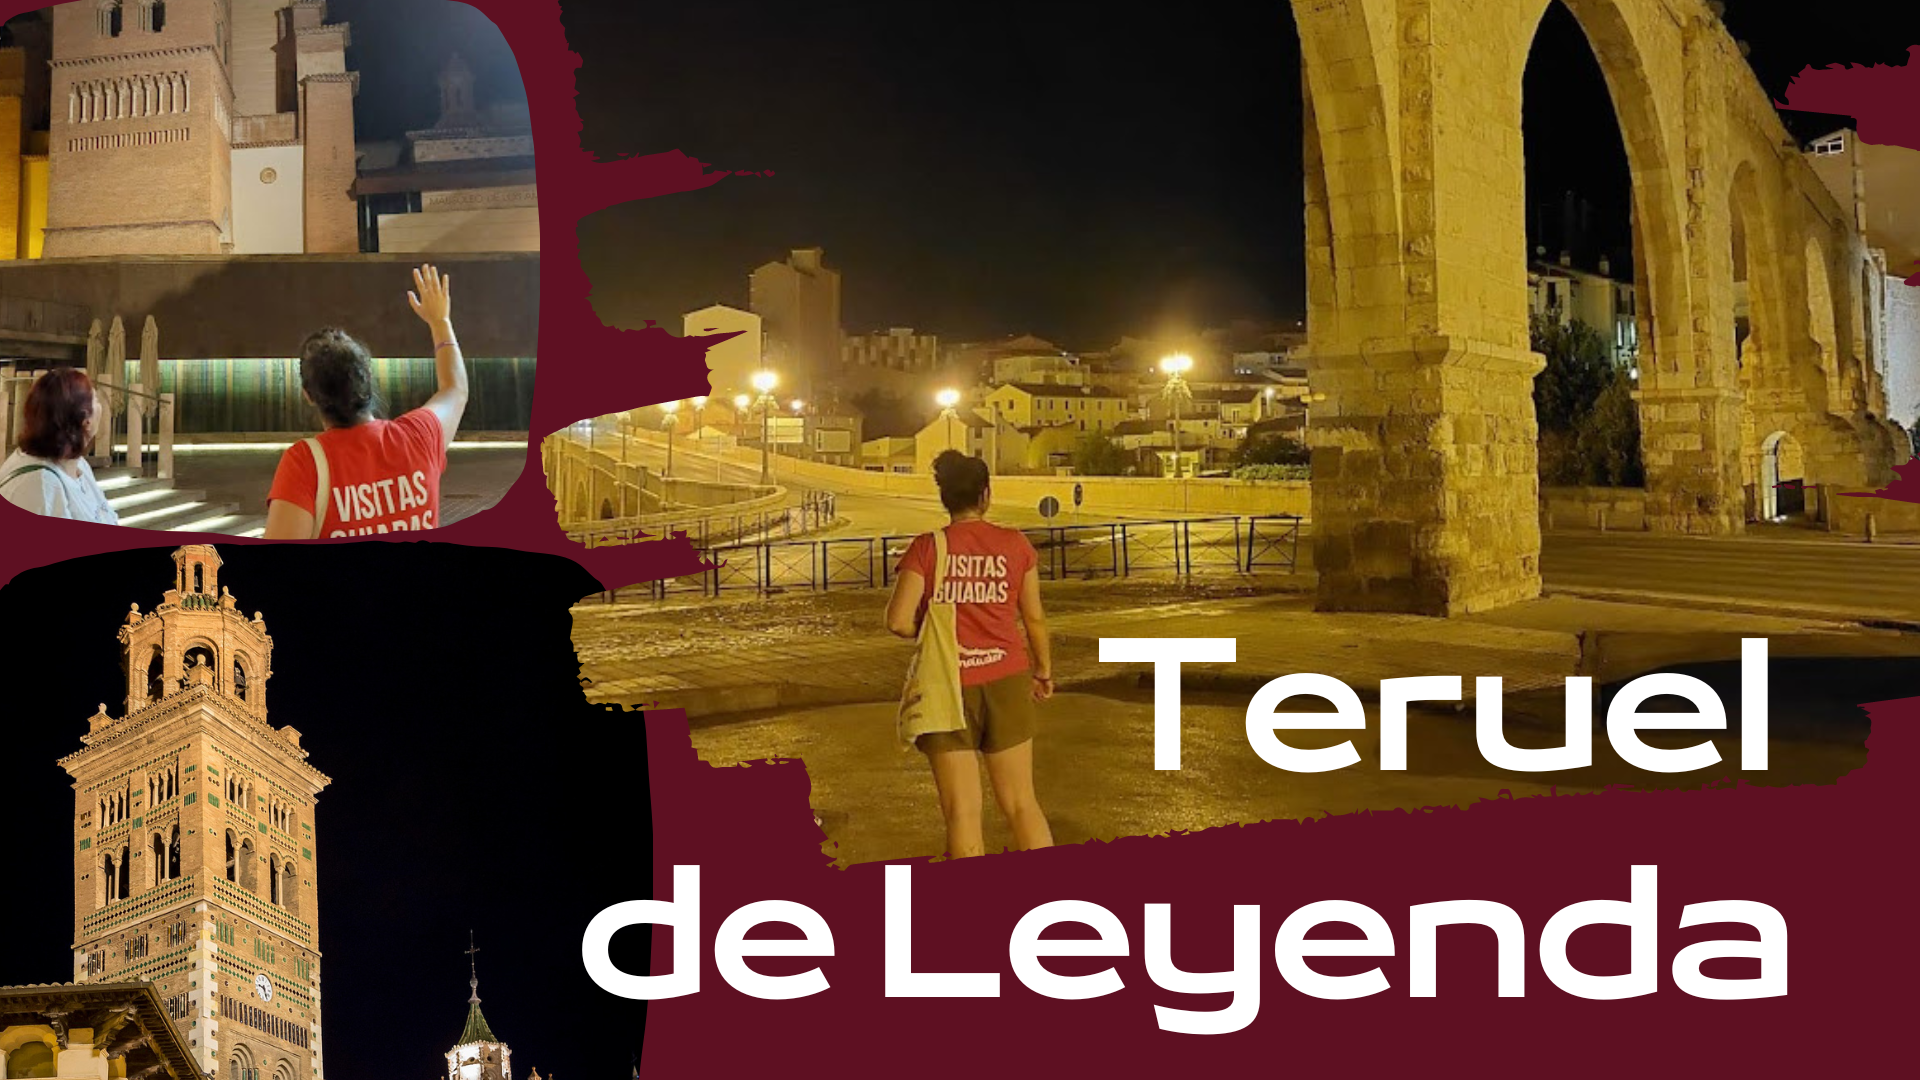 Puente de Diciembre en Teruel: visita guiada Teruel nocturna y leyendas! Del 4 al 10 de Diciembre!